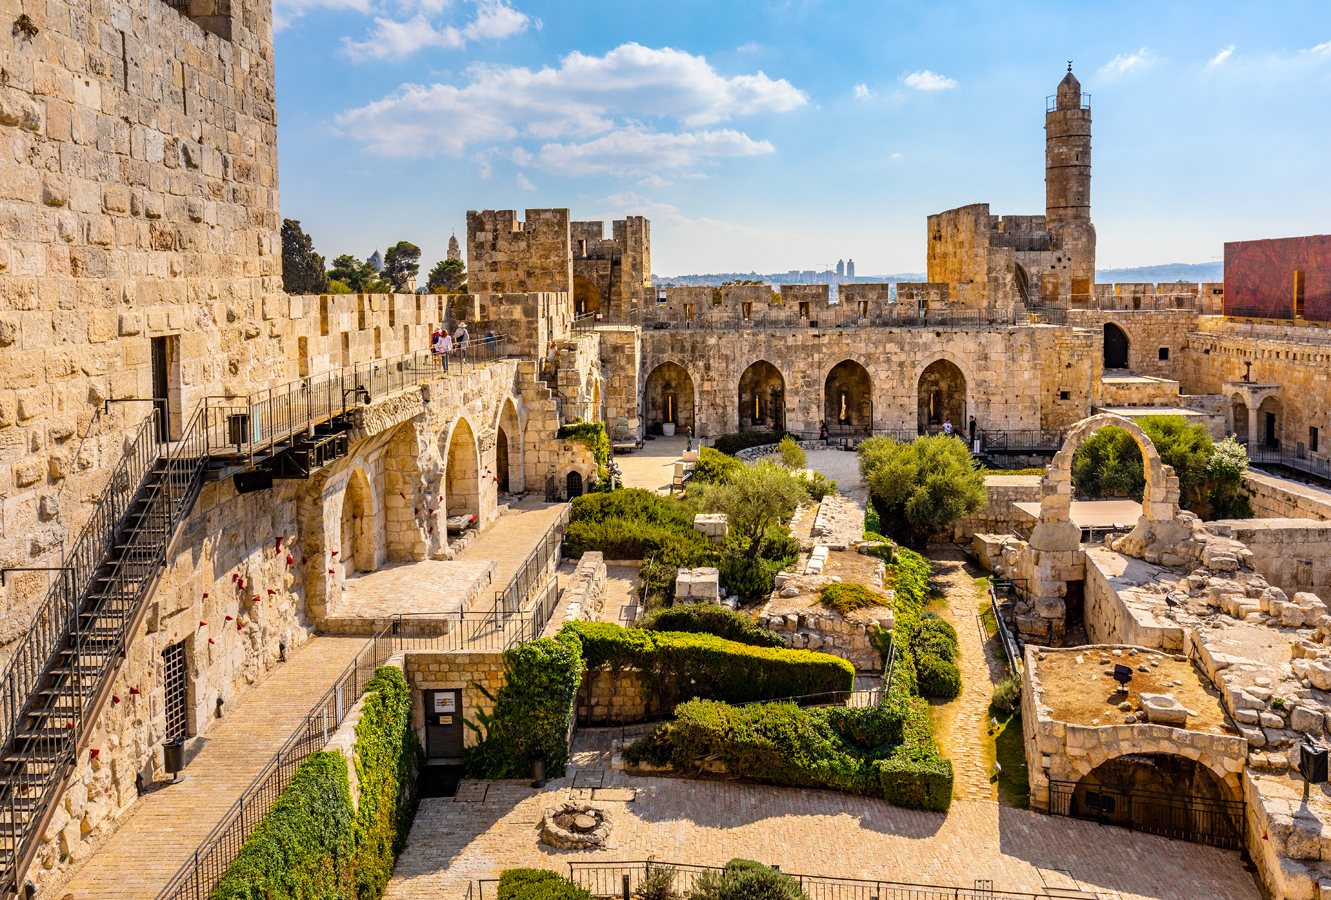 Jeruzalém - citadely u Jaffské brány